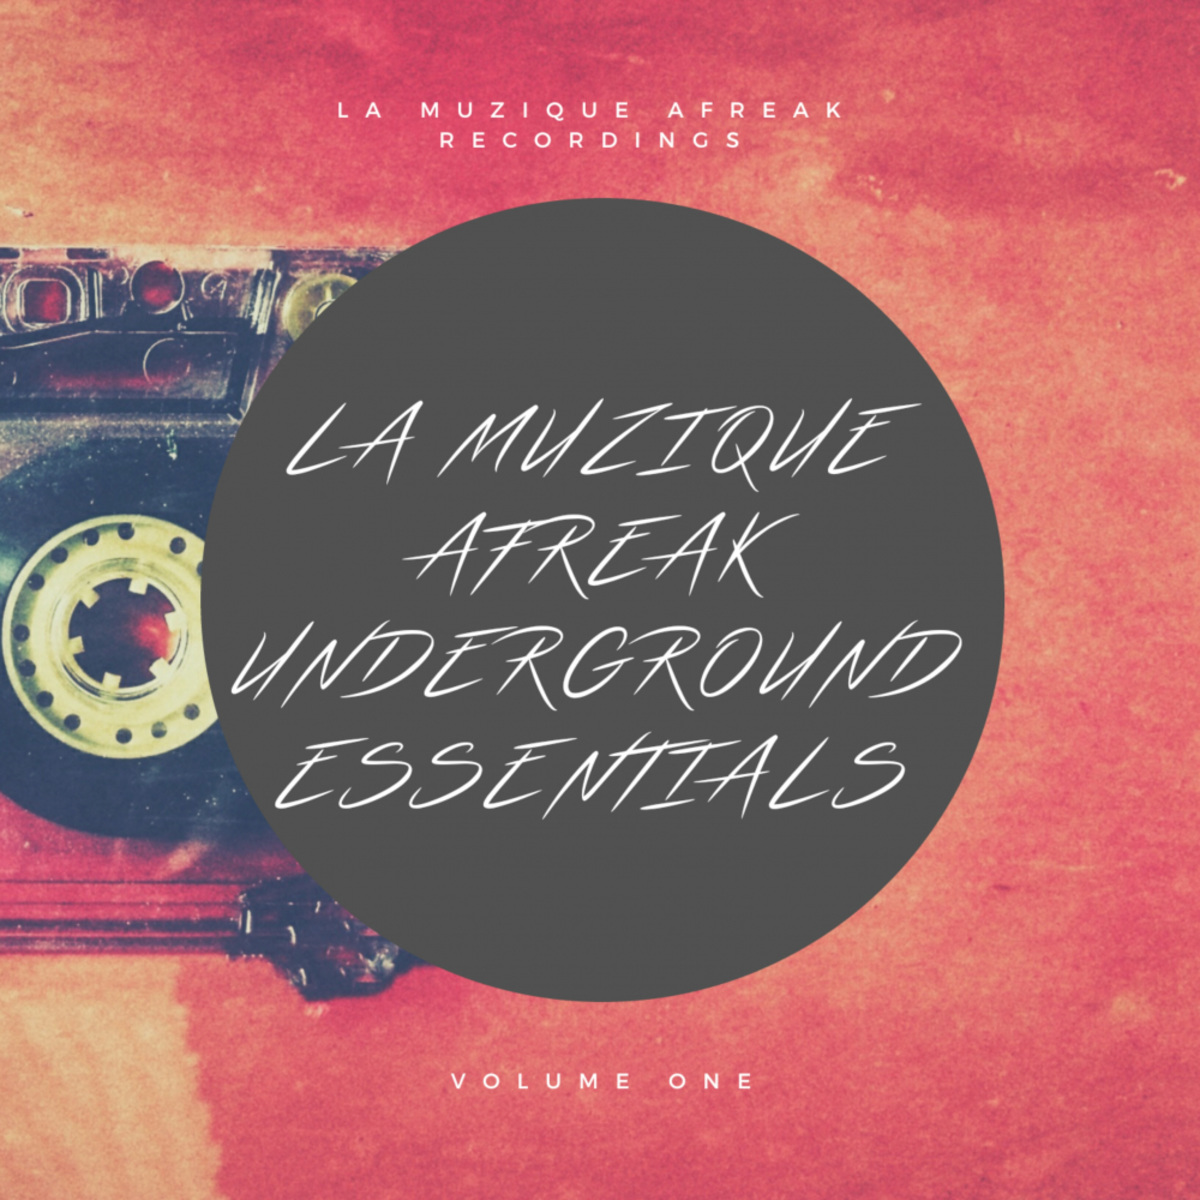 VA - Underground Essentials / La MuziQue Afreak